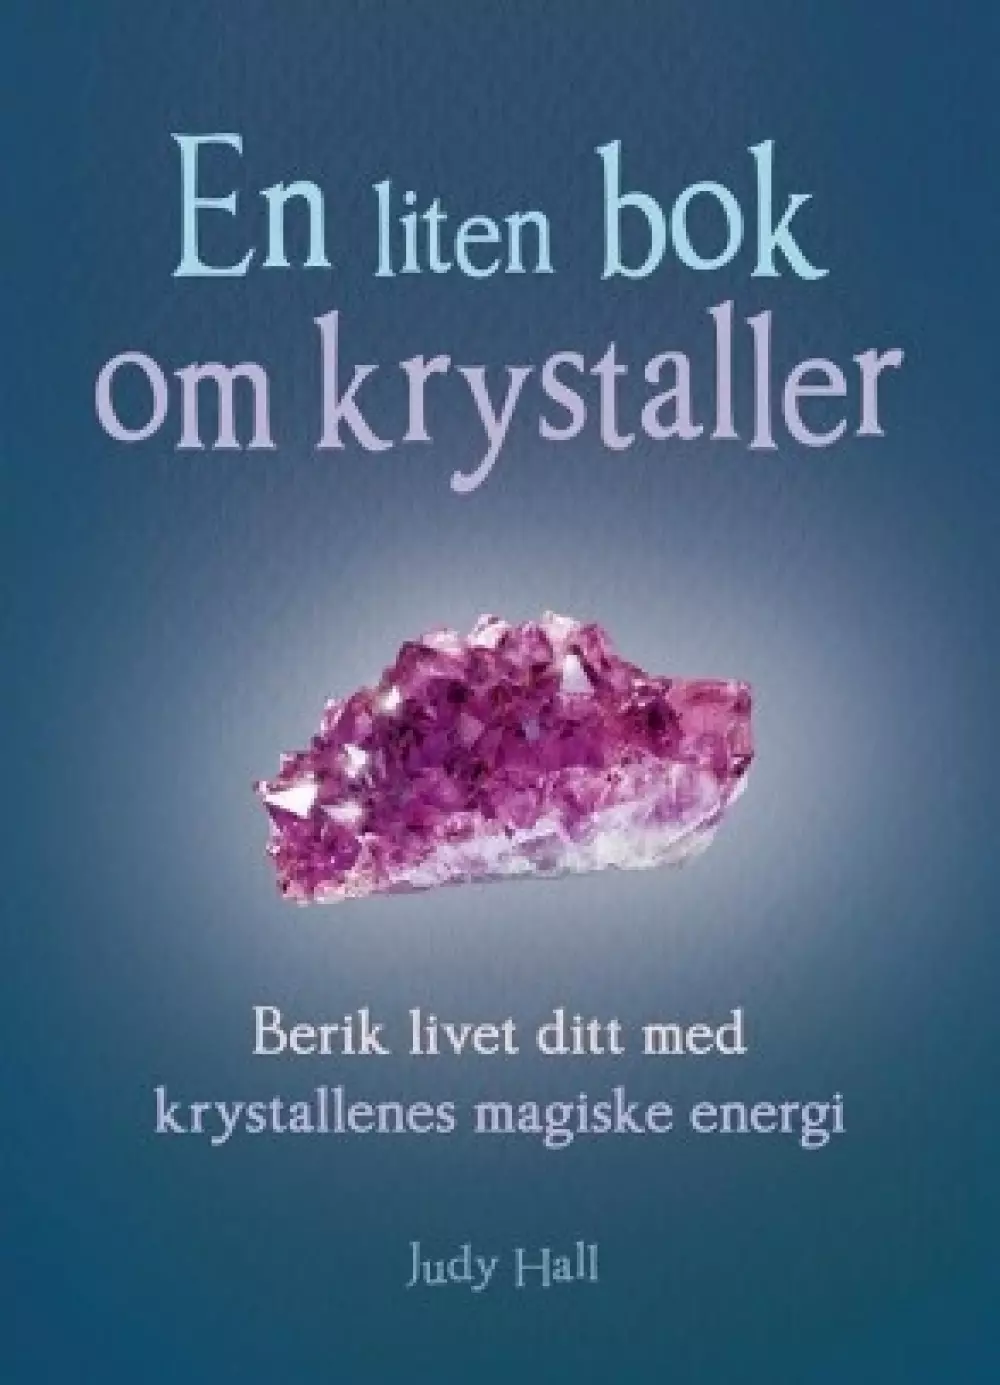 En liten bok om krystaller, Bøker, Healing, meditasjon & helse, Berik livet ditt med krystallenes magiske energi